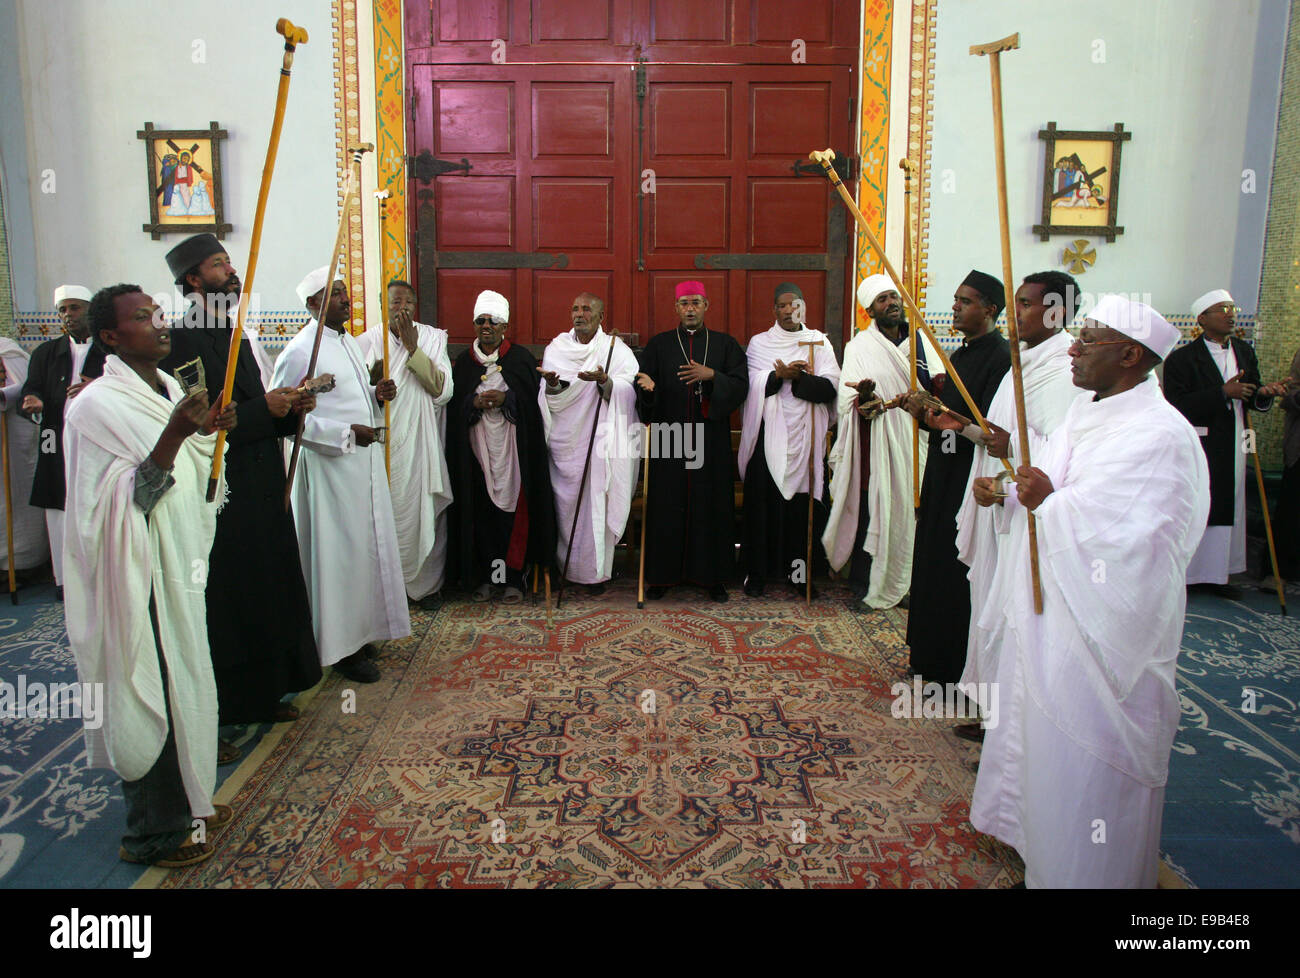 Priester mit Stöcken zu singen, während eine Mahnwache im orthodoxen Ritus in der katholischen Kathedrale des Heiligen Erlösers, Adigrat, Äthiopien Stockfoto